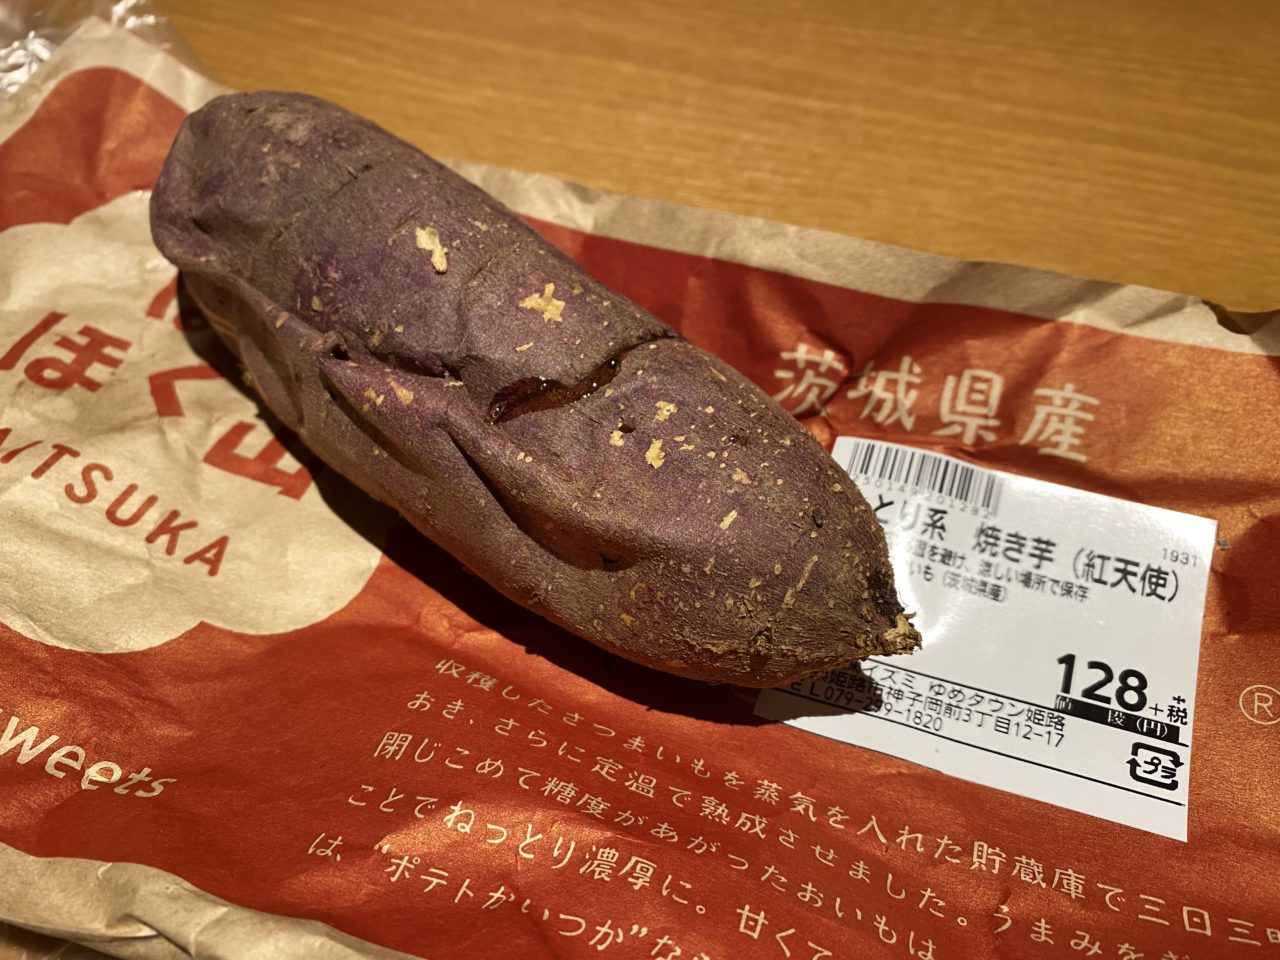 ゆめタウン姫路内で売っていた「ほくほく山焼きいも」を買ってフクスケの焼きいもとどっちが美味しいか比べてみた